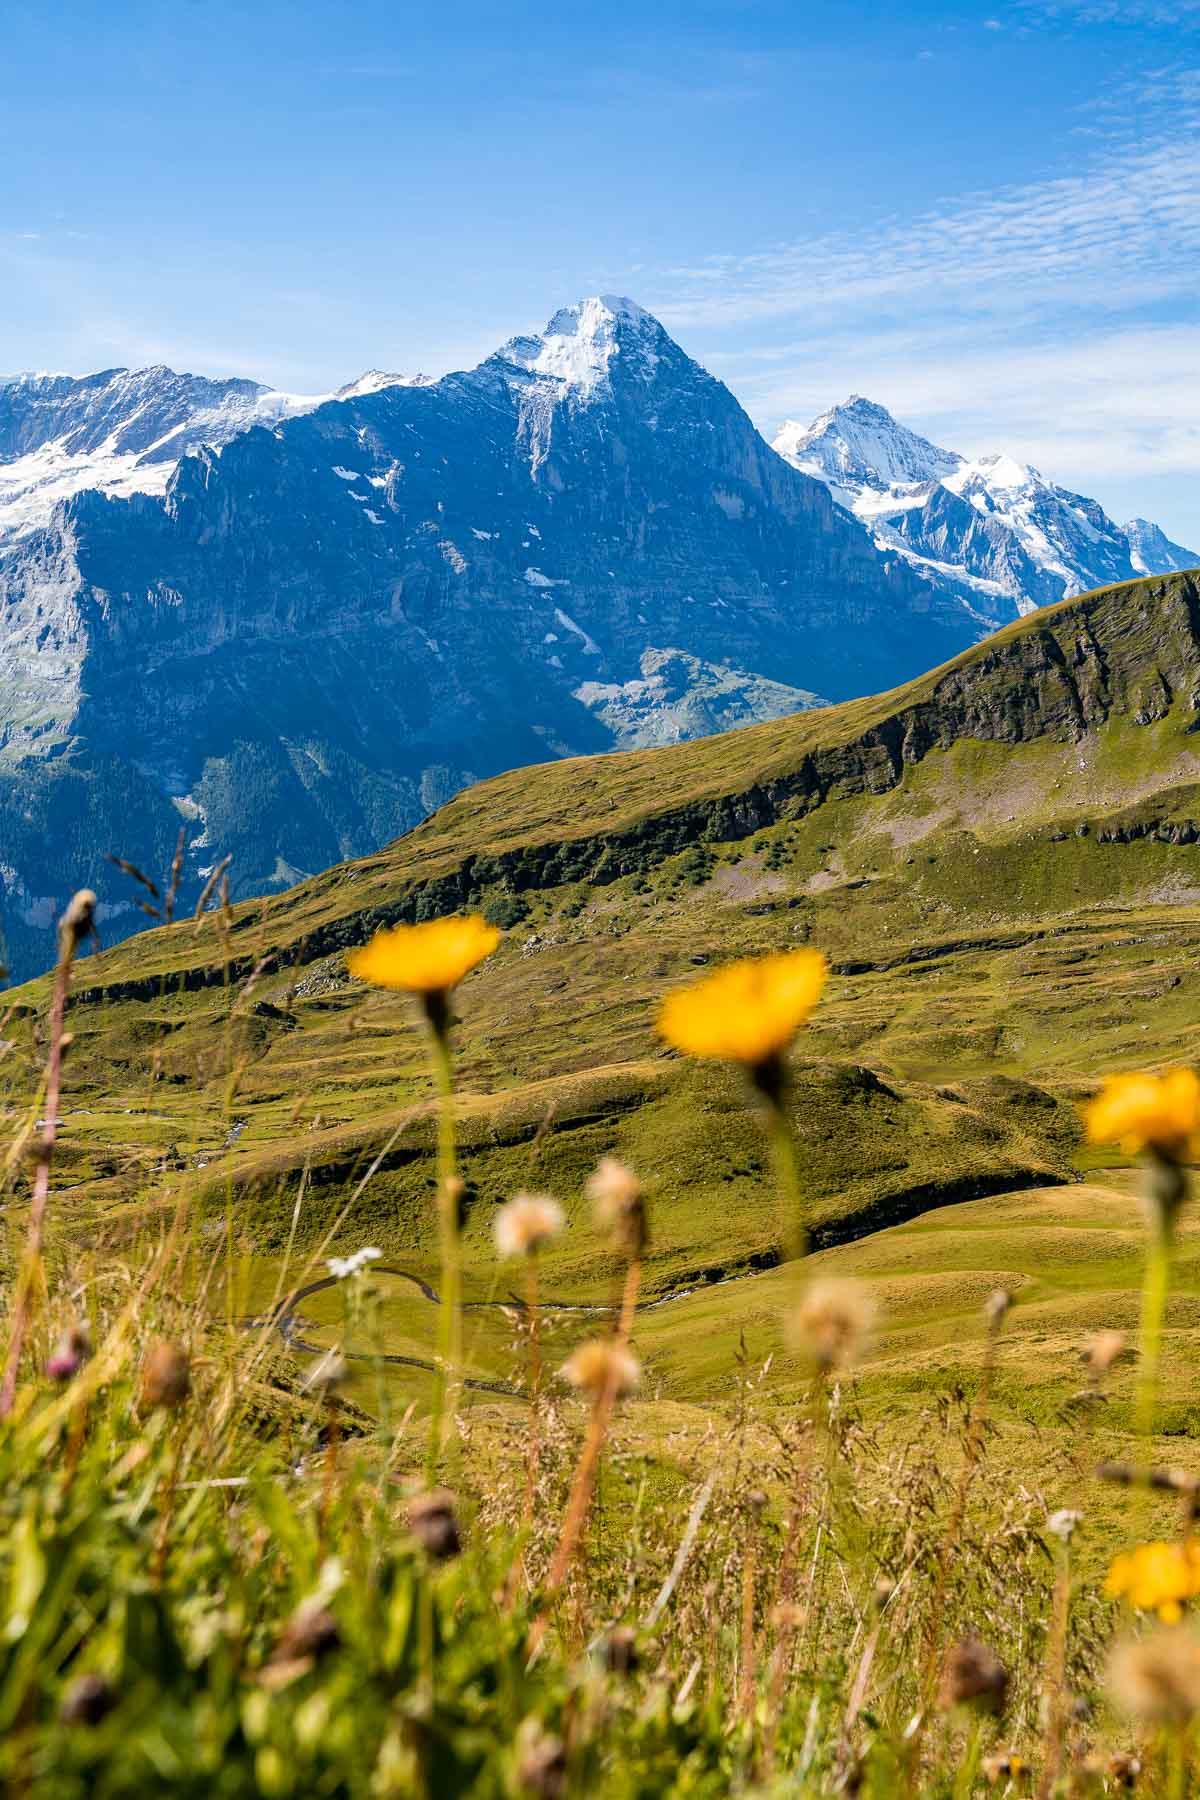 Mountain panorama at Grindelwald, Switzerland